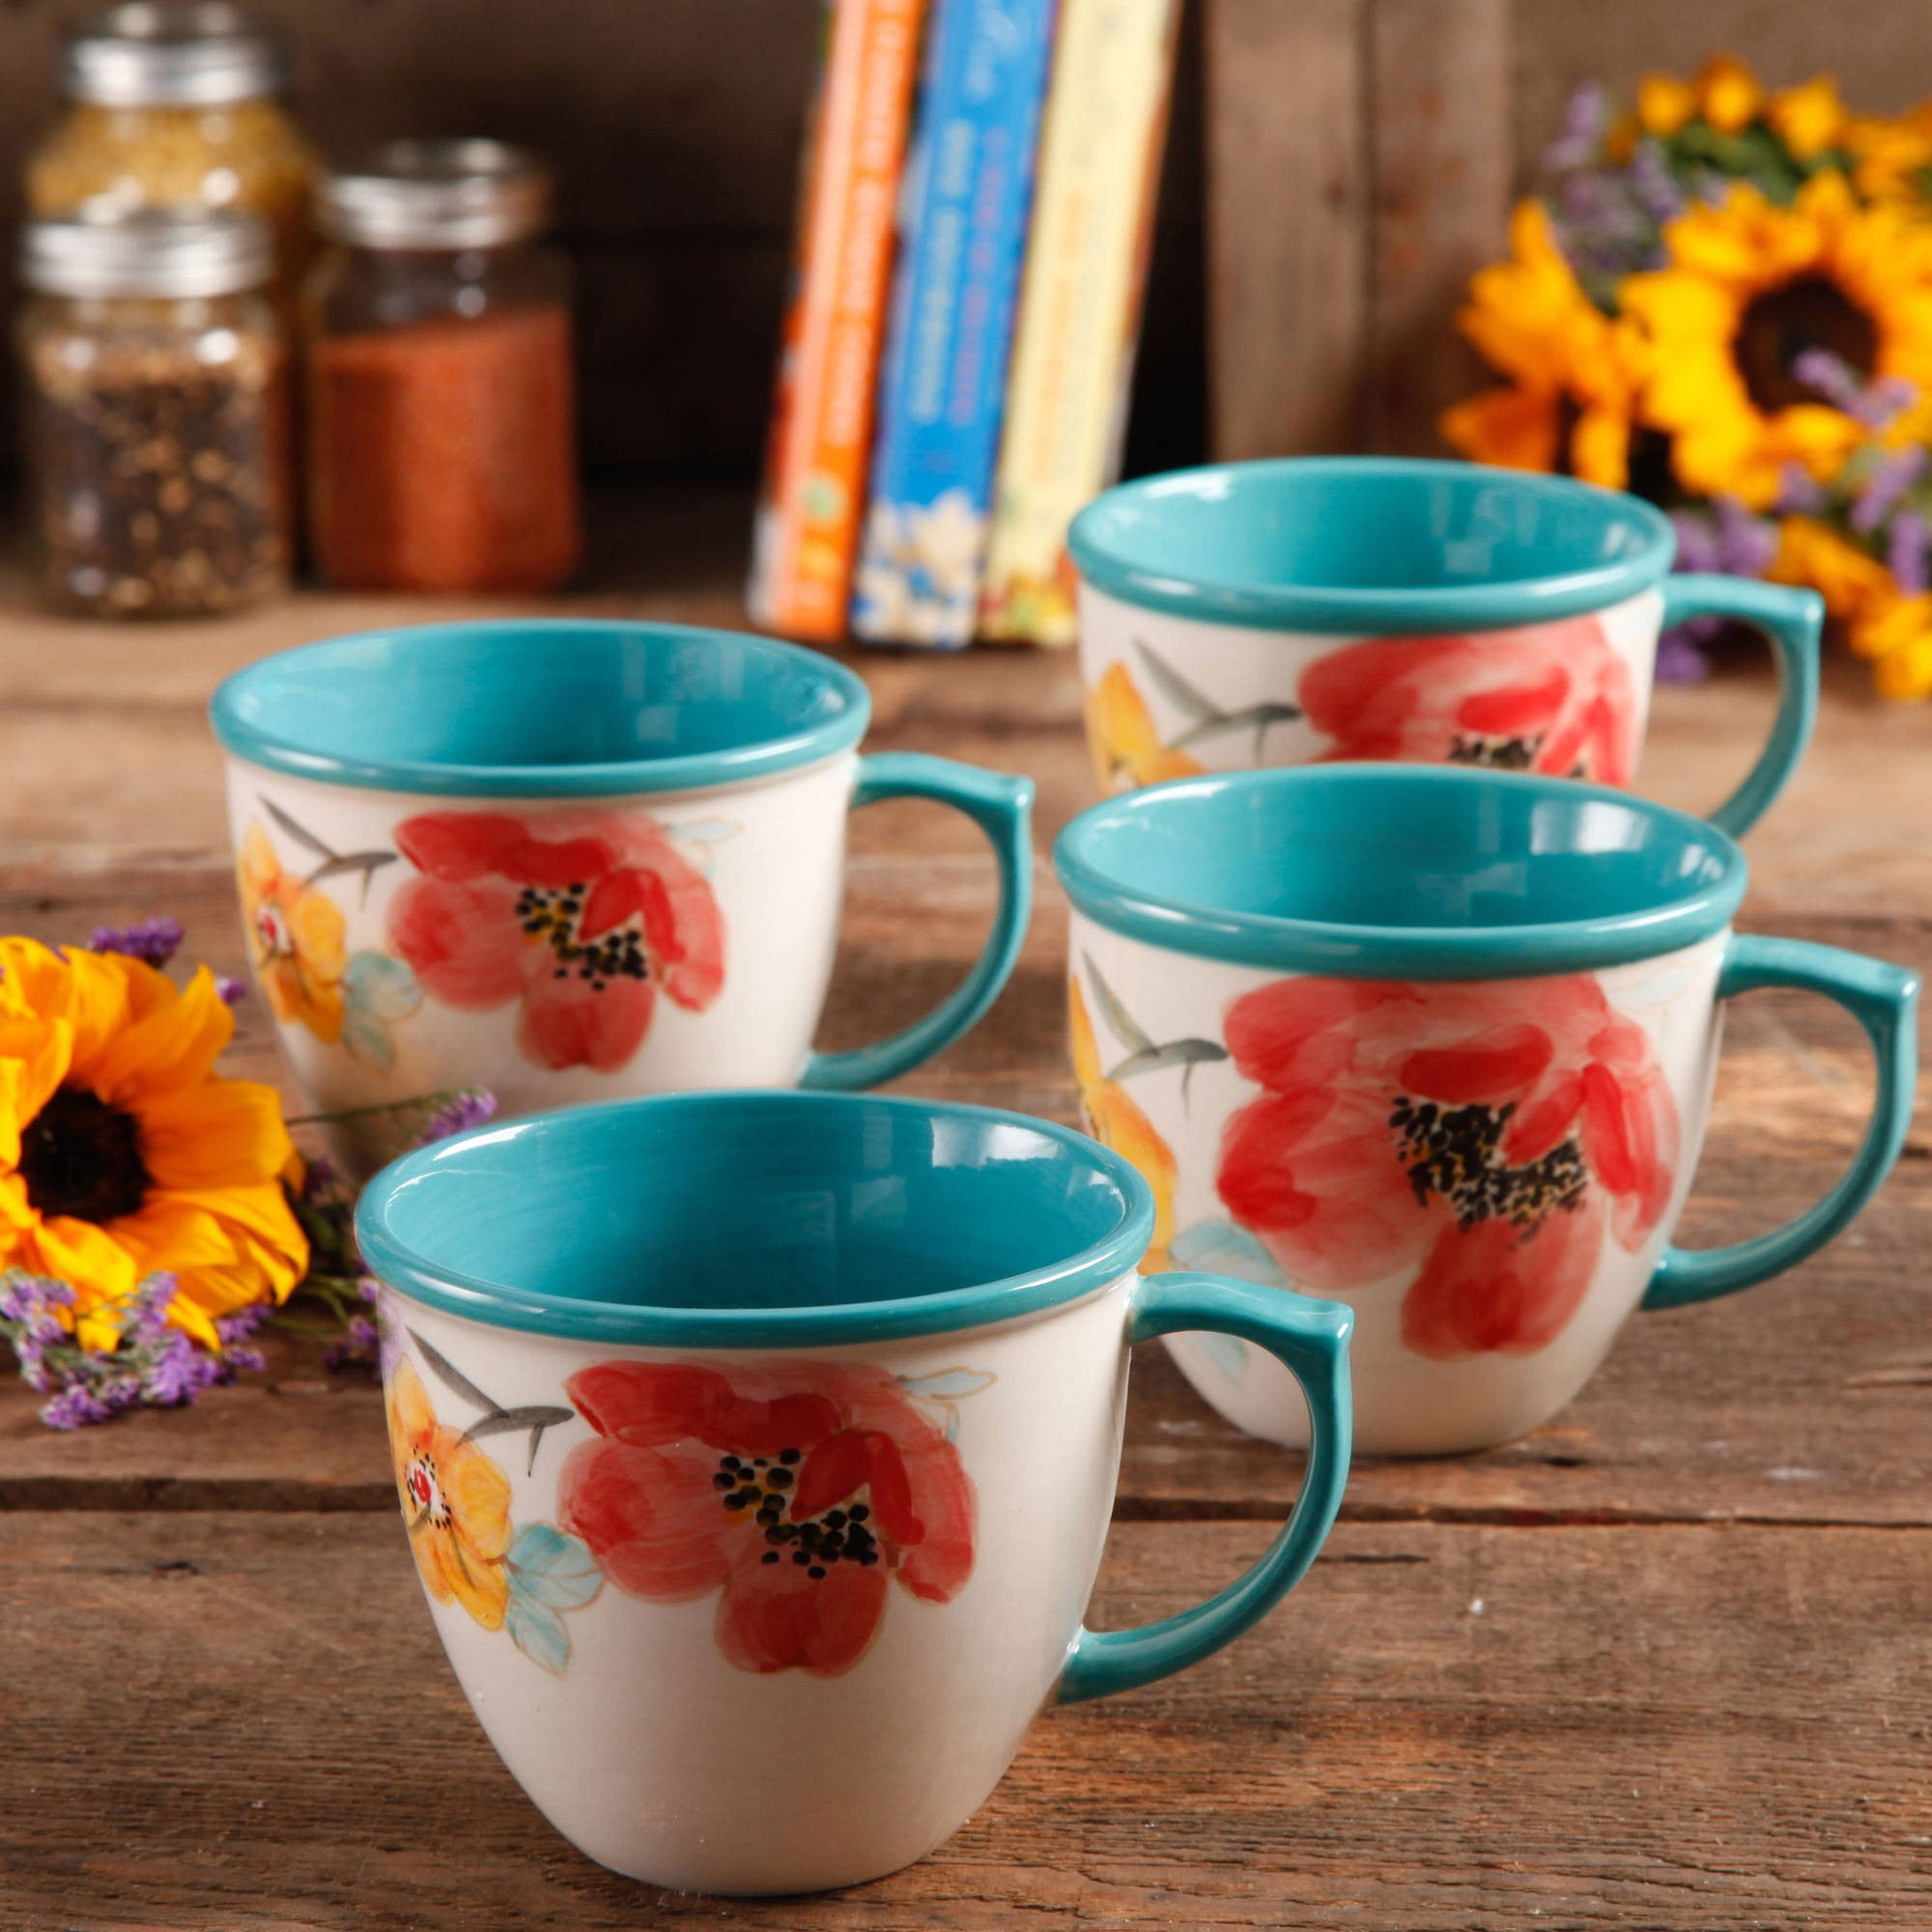 The Pioneer Woman Vintage Floral Set of 4 Mug Coffee Cup 16 oz 